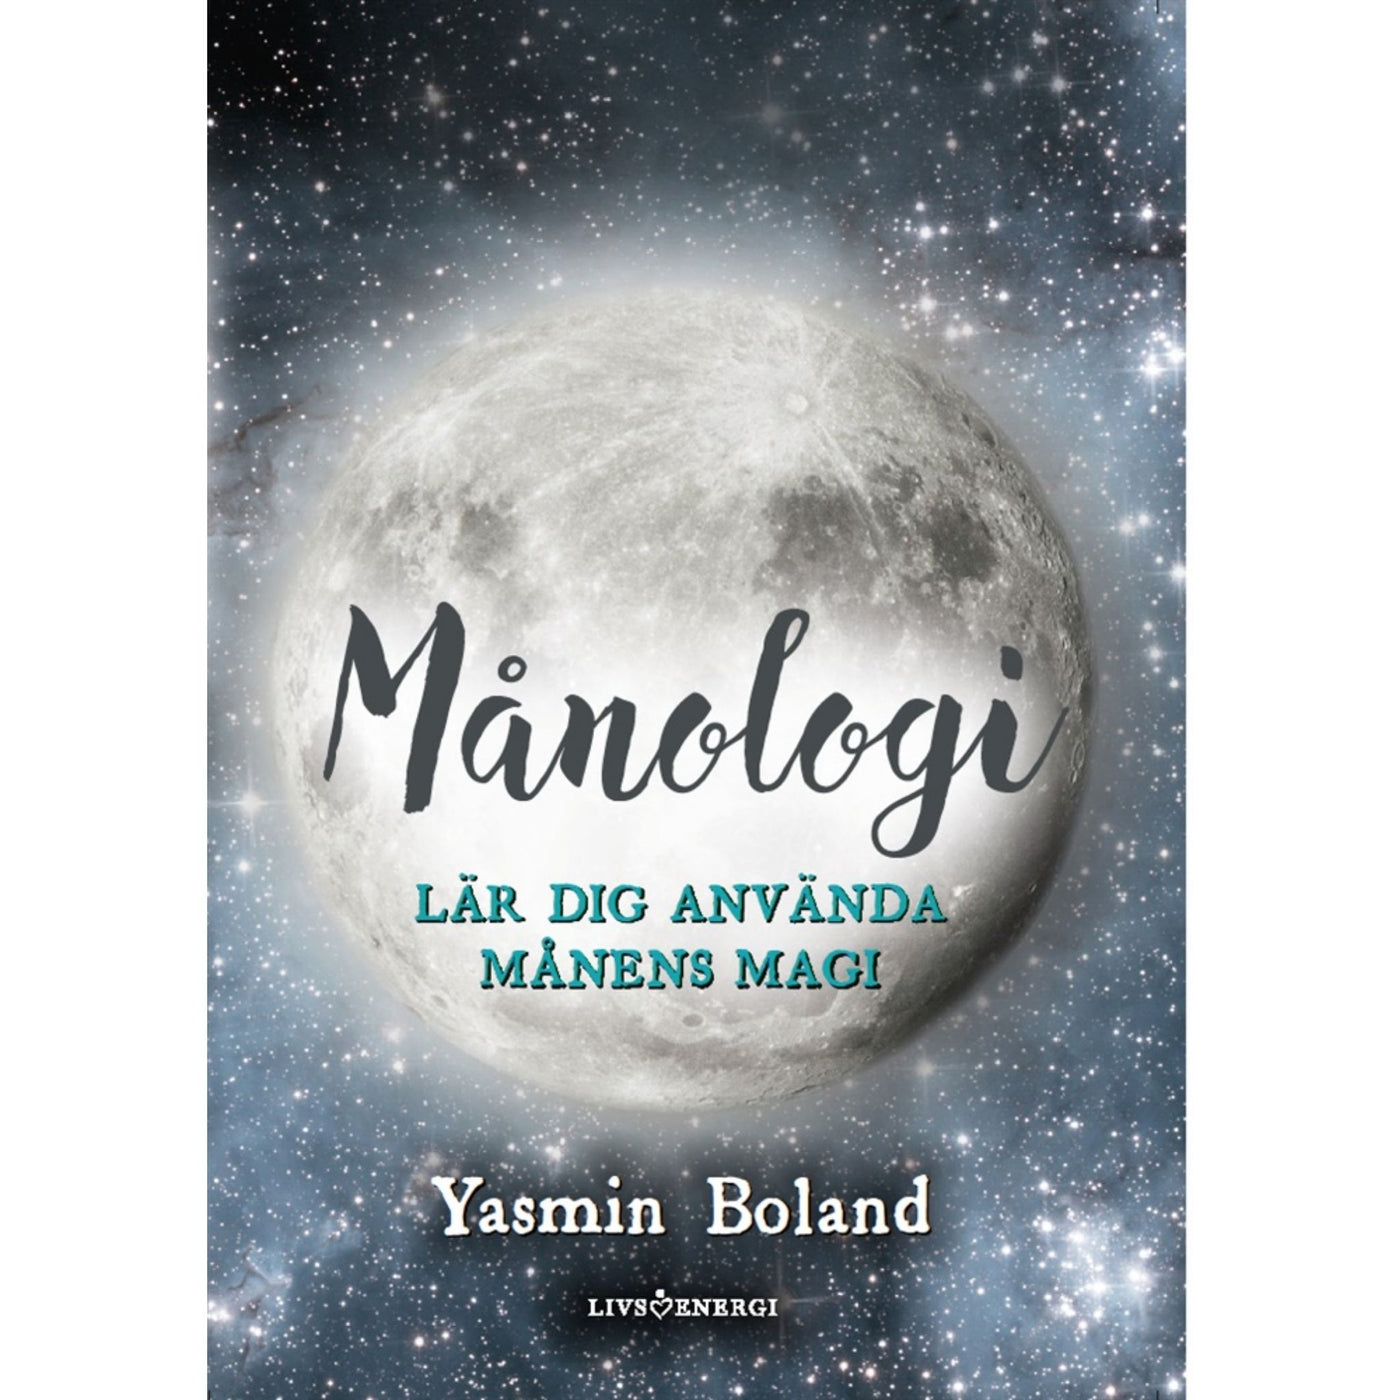 Månologi - bok om månens magi